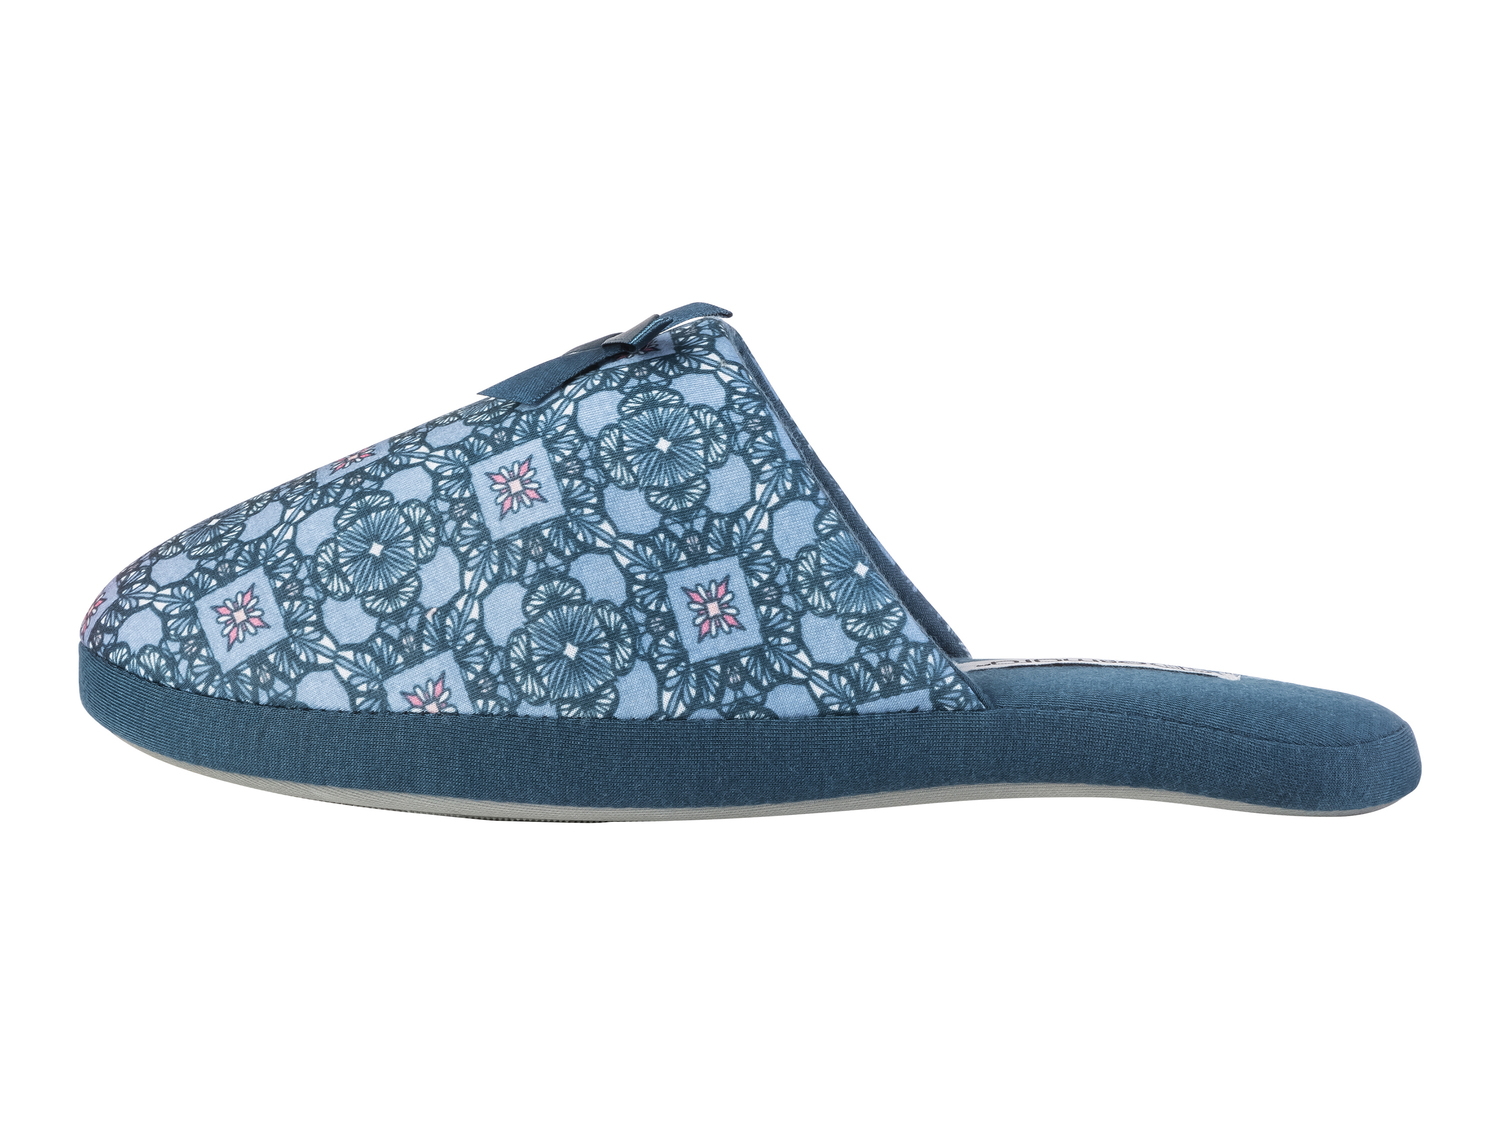 Pantofole da donna Esmara, prezzo 4.99 € 
Misure: 36-41 
- Prodotto sostenibile ...